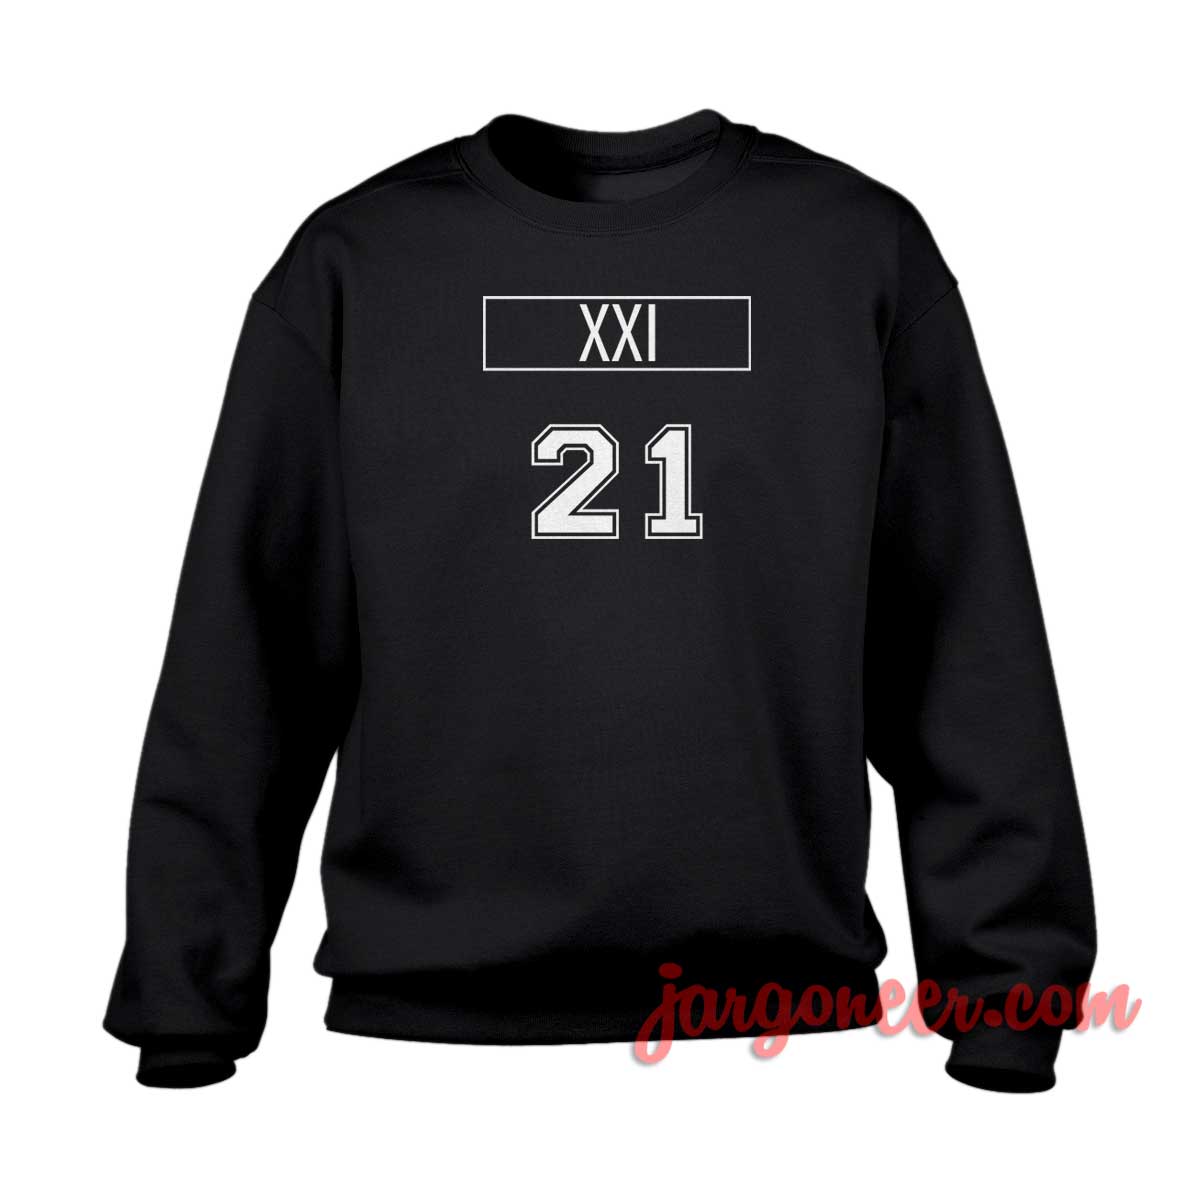 XXI 21 1 - Shop Unique Graphic Cool Shirt Designs